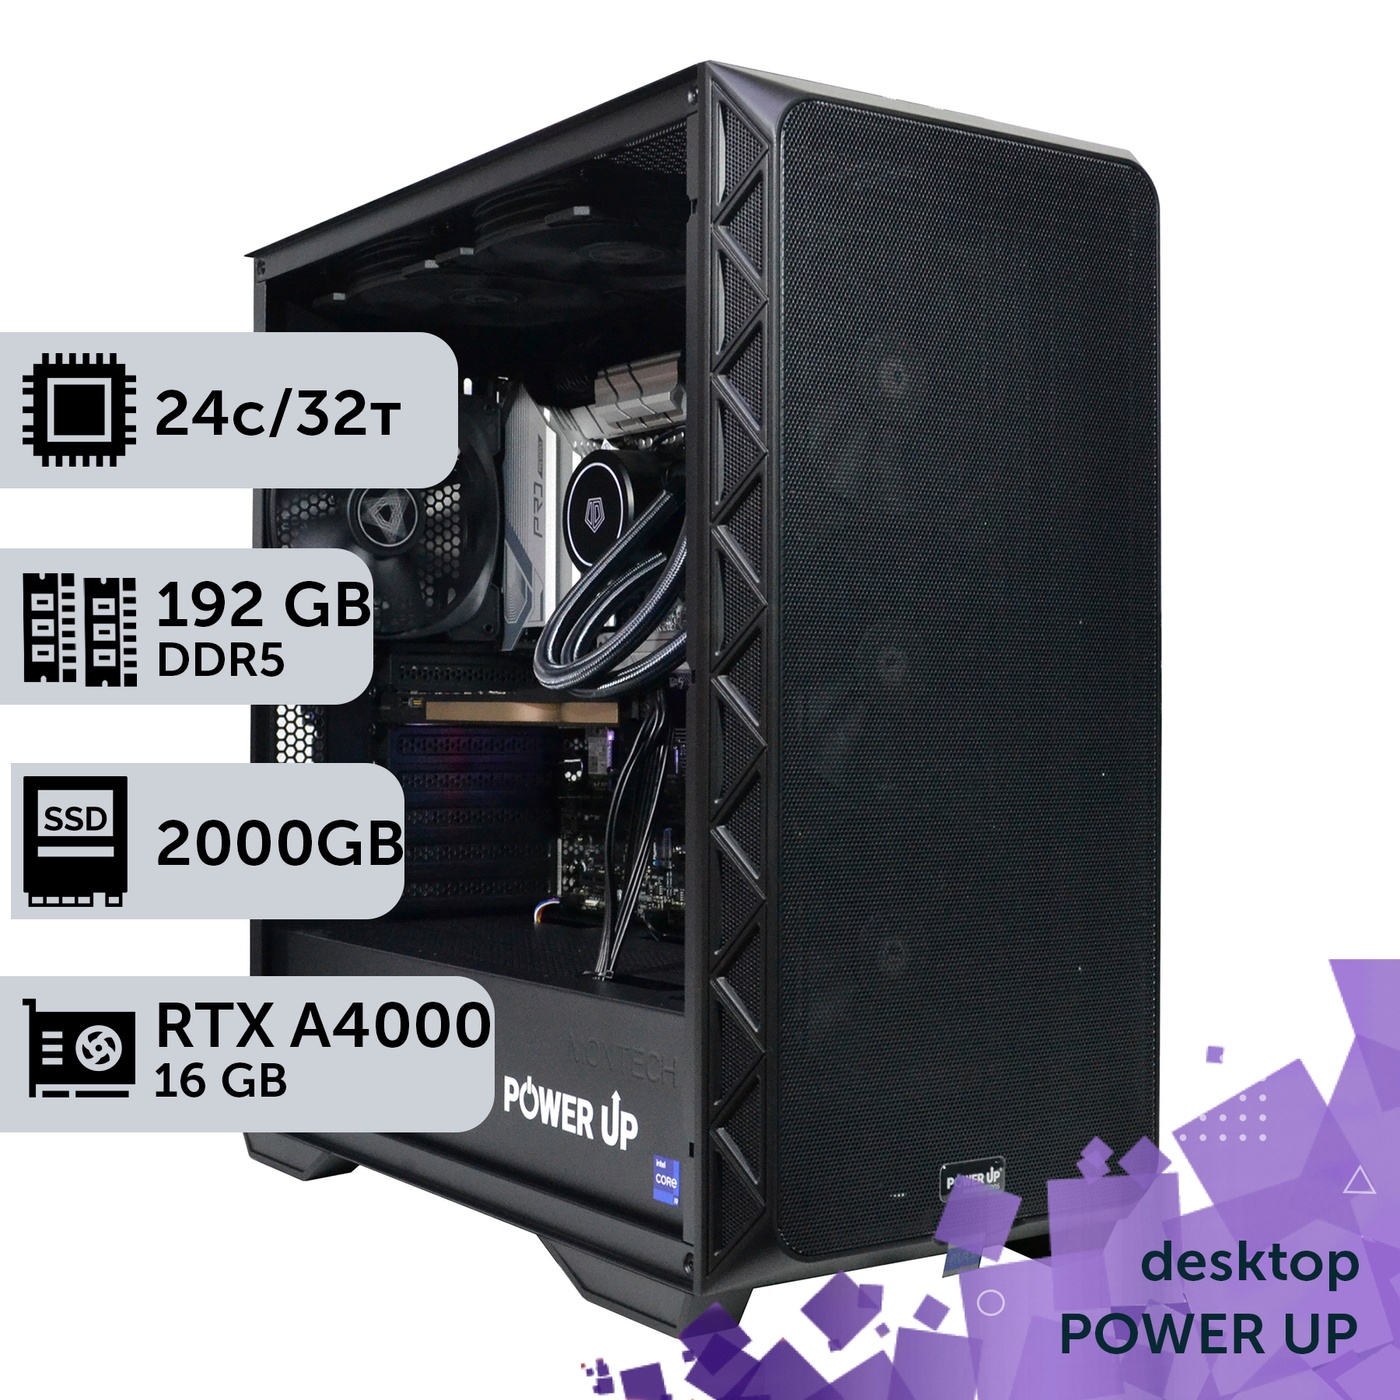 Рабочая станция PowerUp Desktop #390 Core i9 14900K/192 GB/SSD 2TB/NVIDIA Quadro RTX A4000 16GB